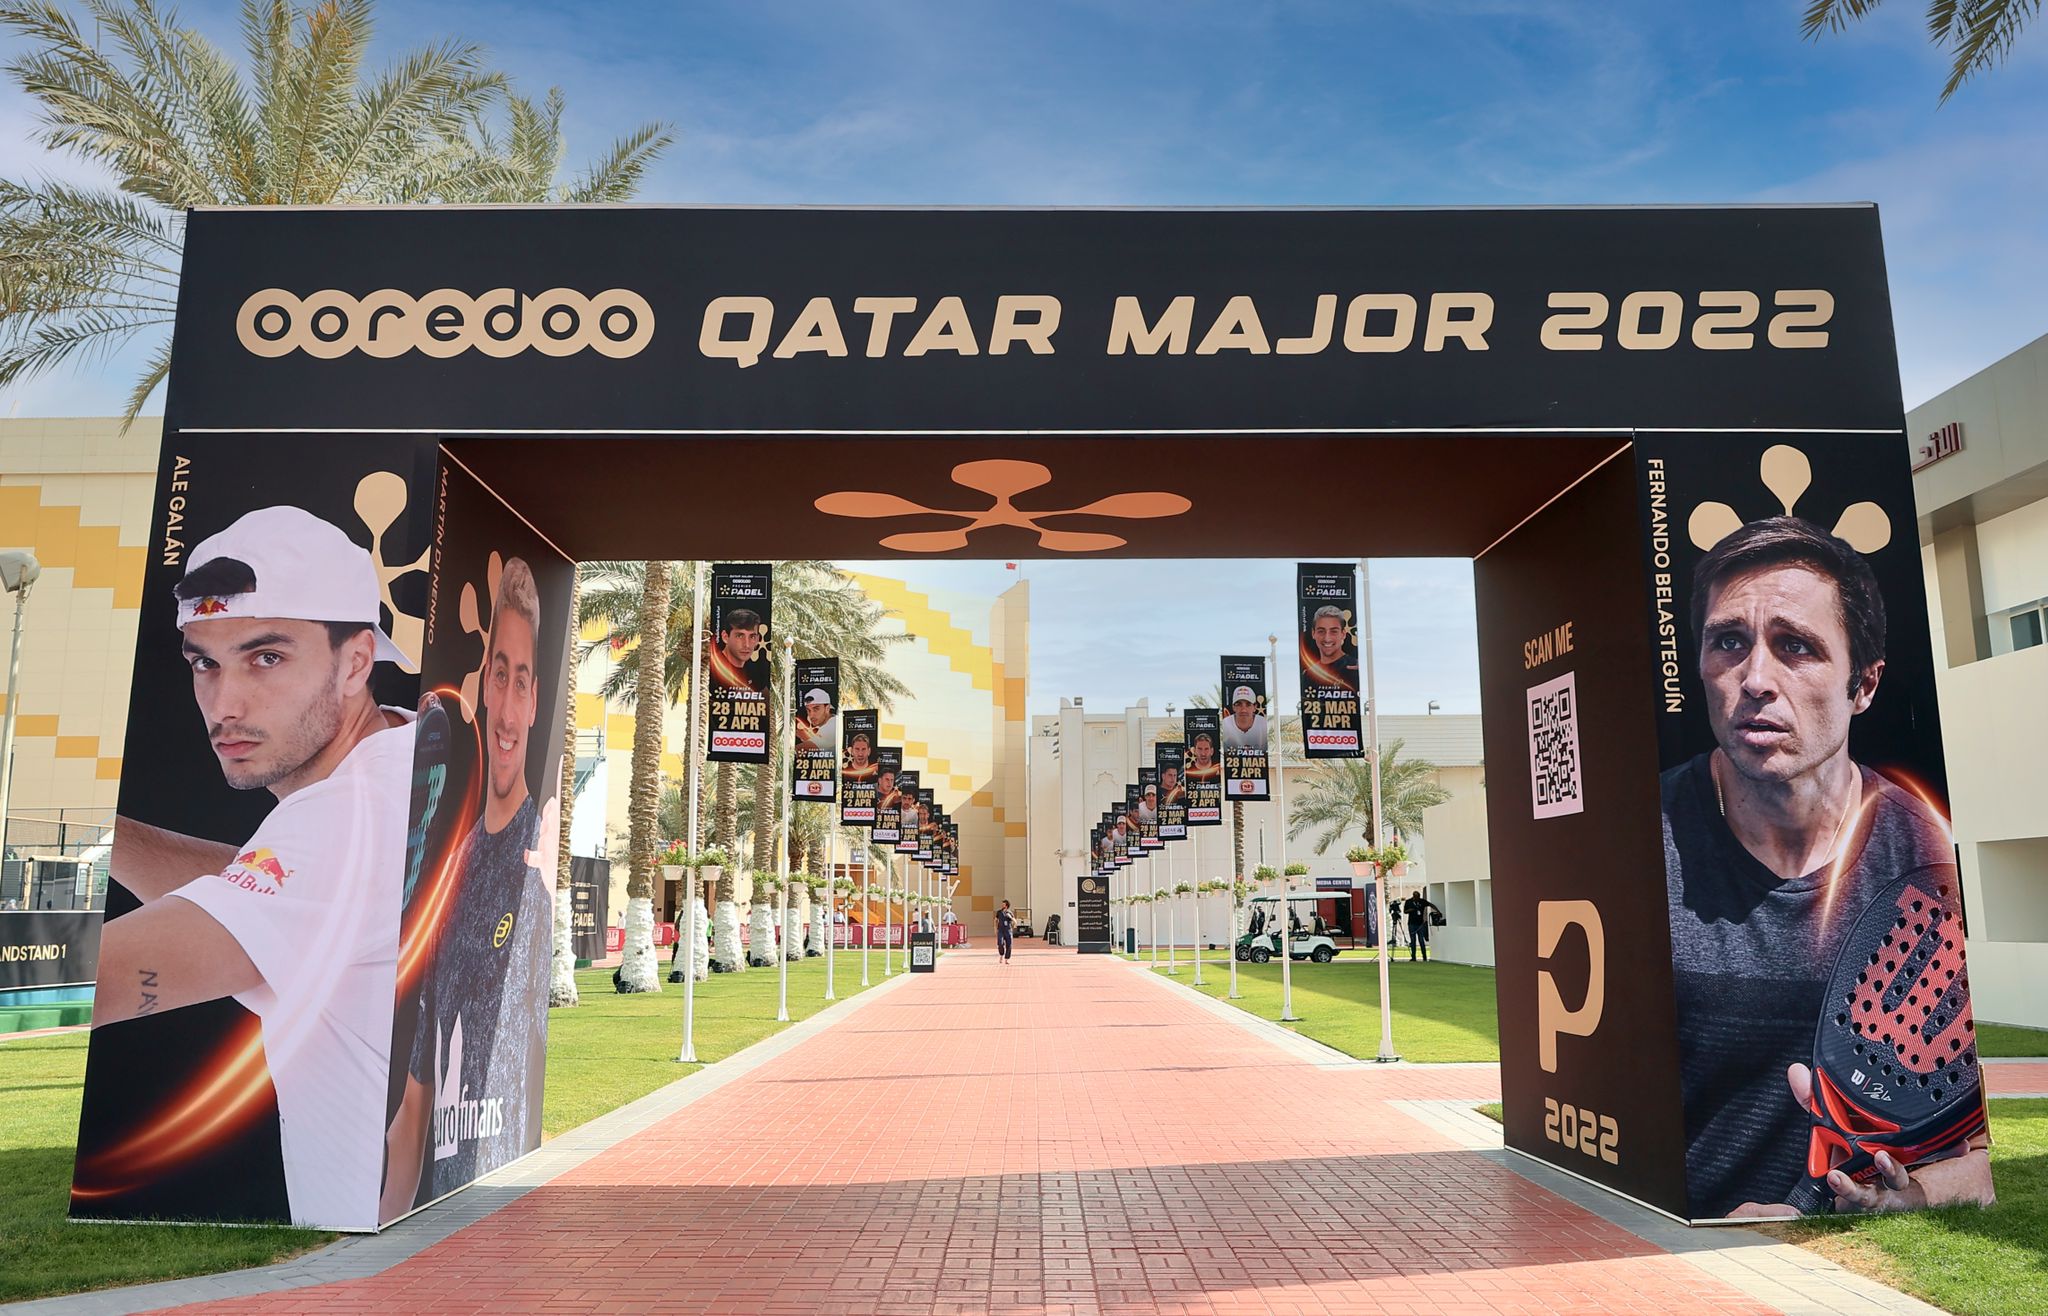 Entrada Khalifa Doha Qatar Major 2022